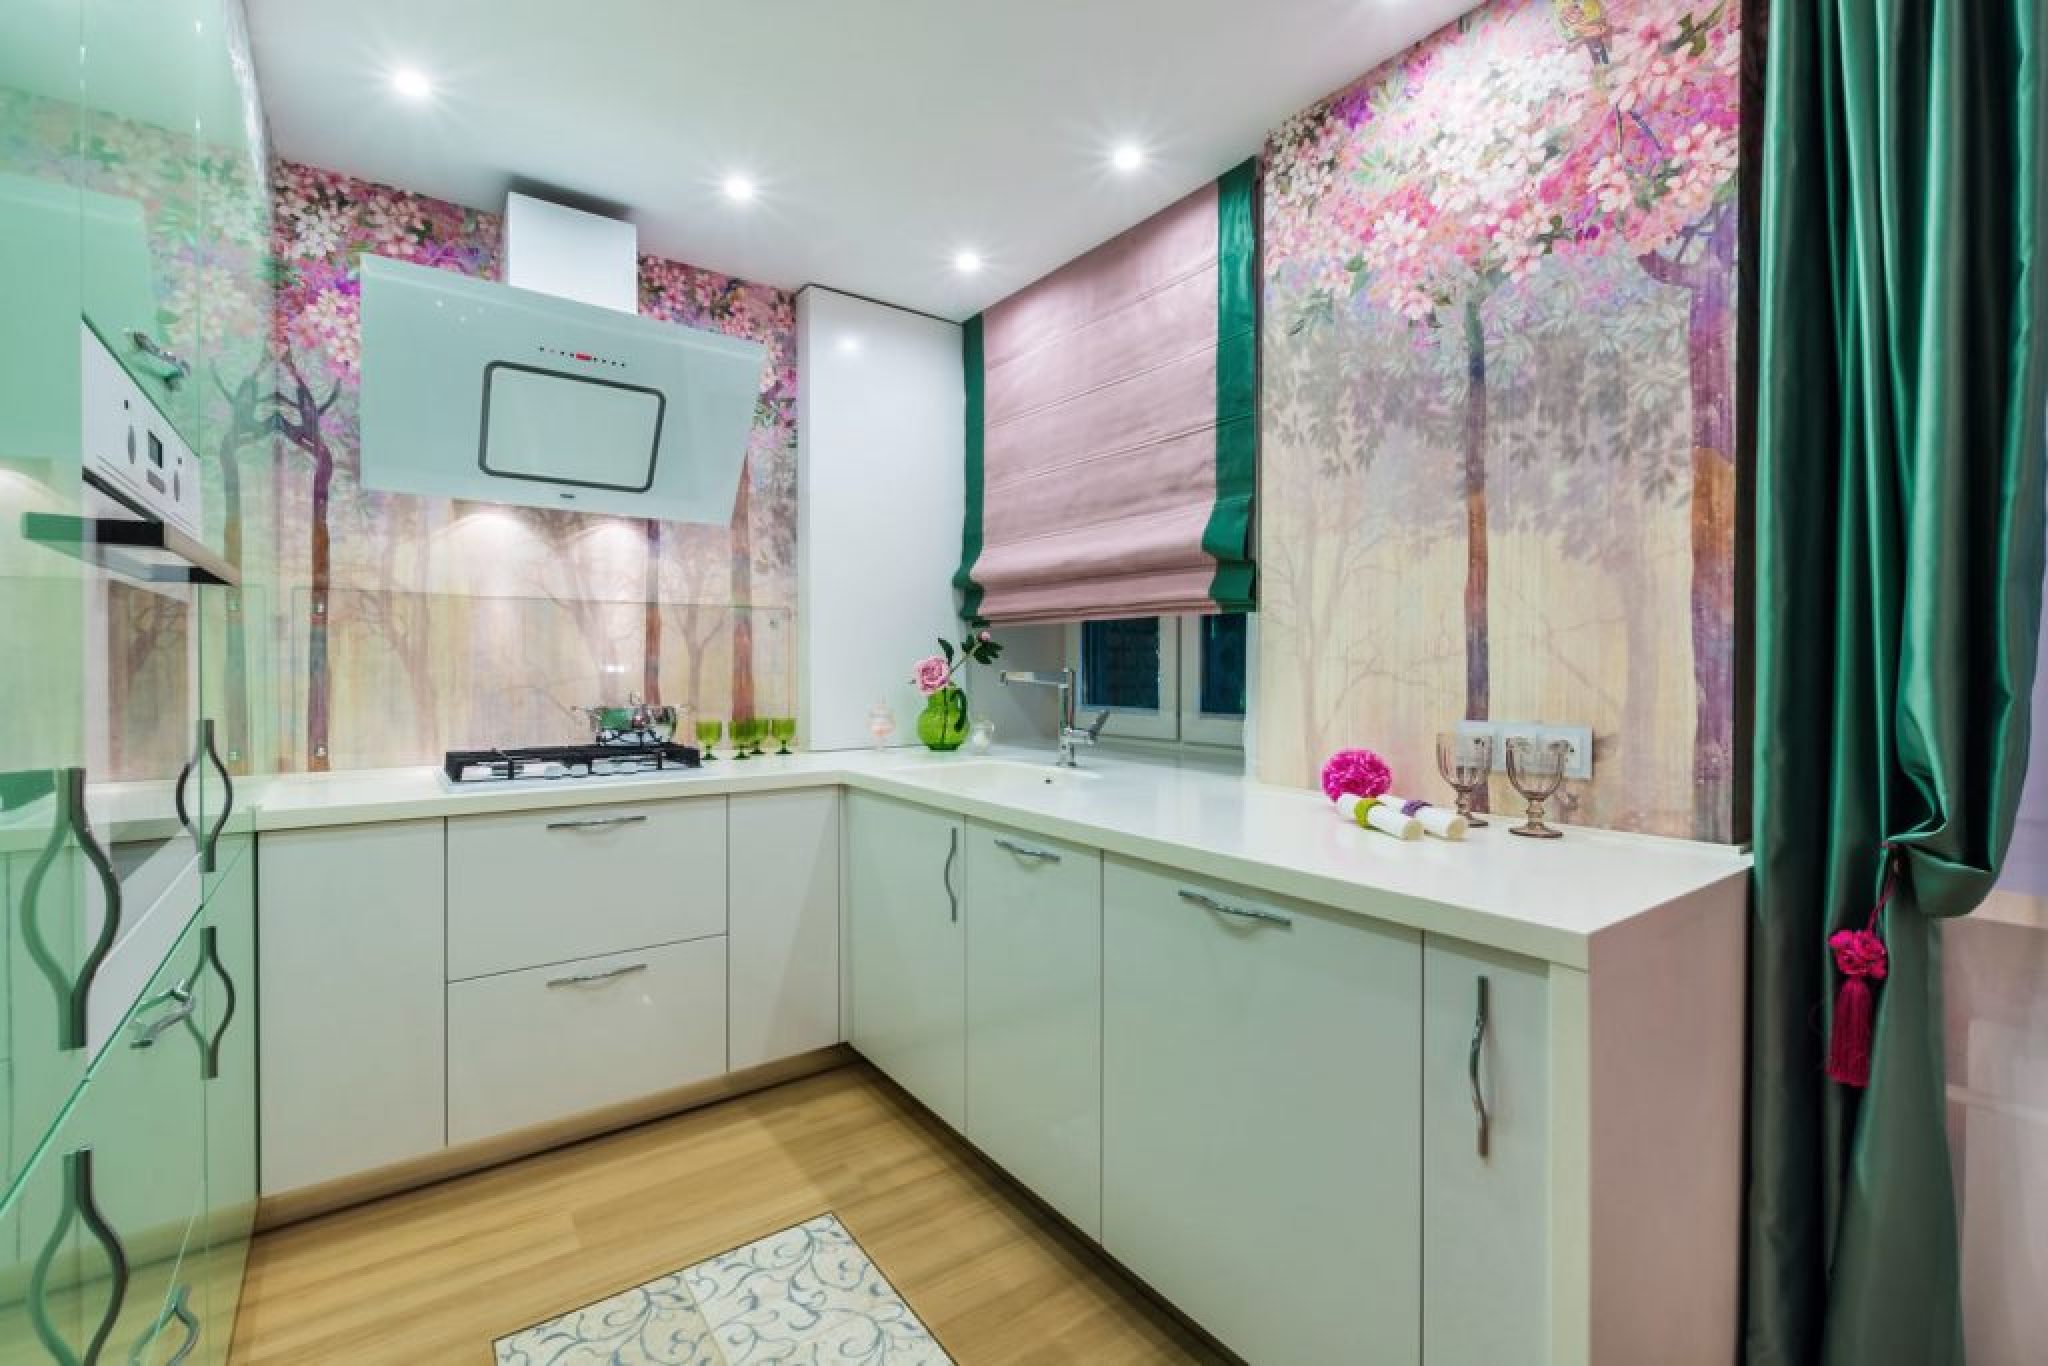 Ремонт на кухне обои. Кухня мятного цвета. Красивые кухни в квартирах. Кухня в розово зеленых тонах. Ремонт на кухне идеи.